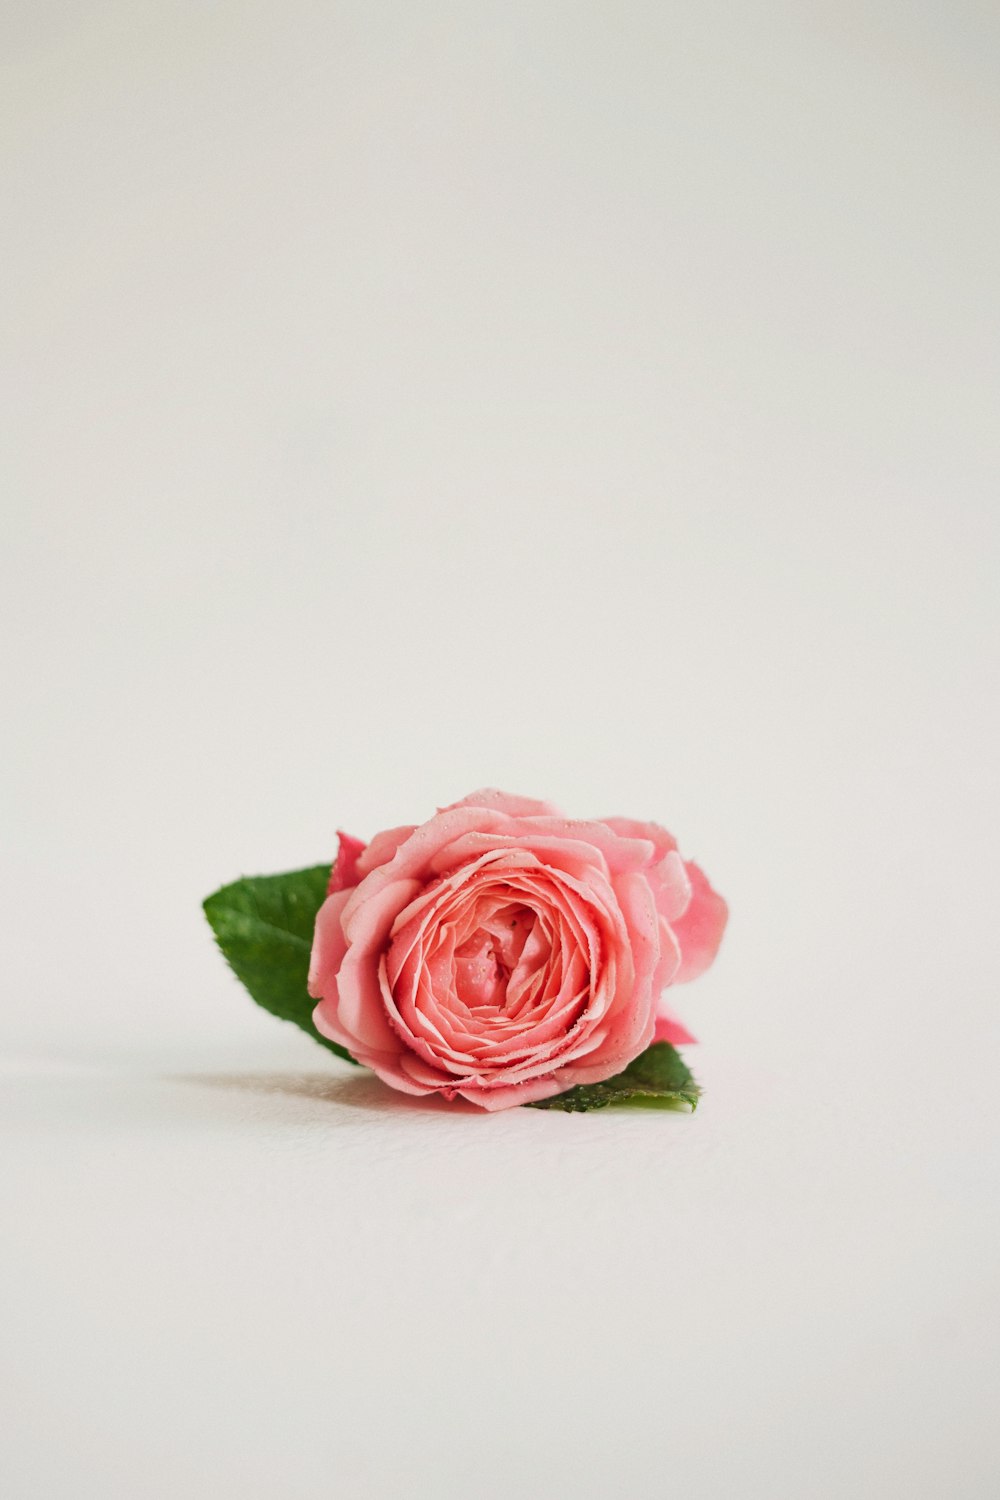 흰색 바탕에 하나의 분홍색 장미